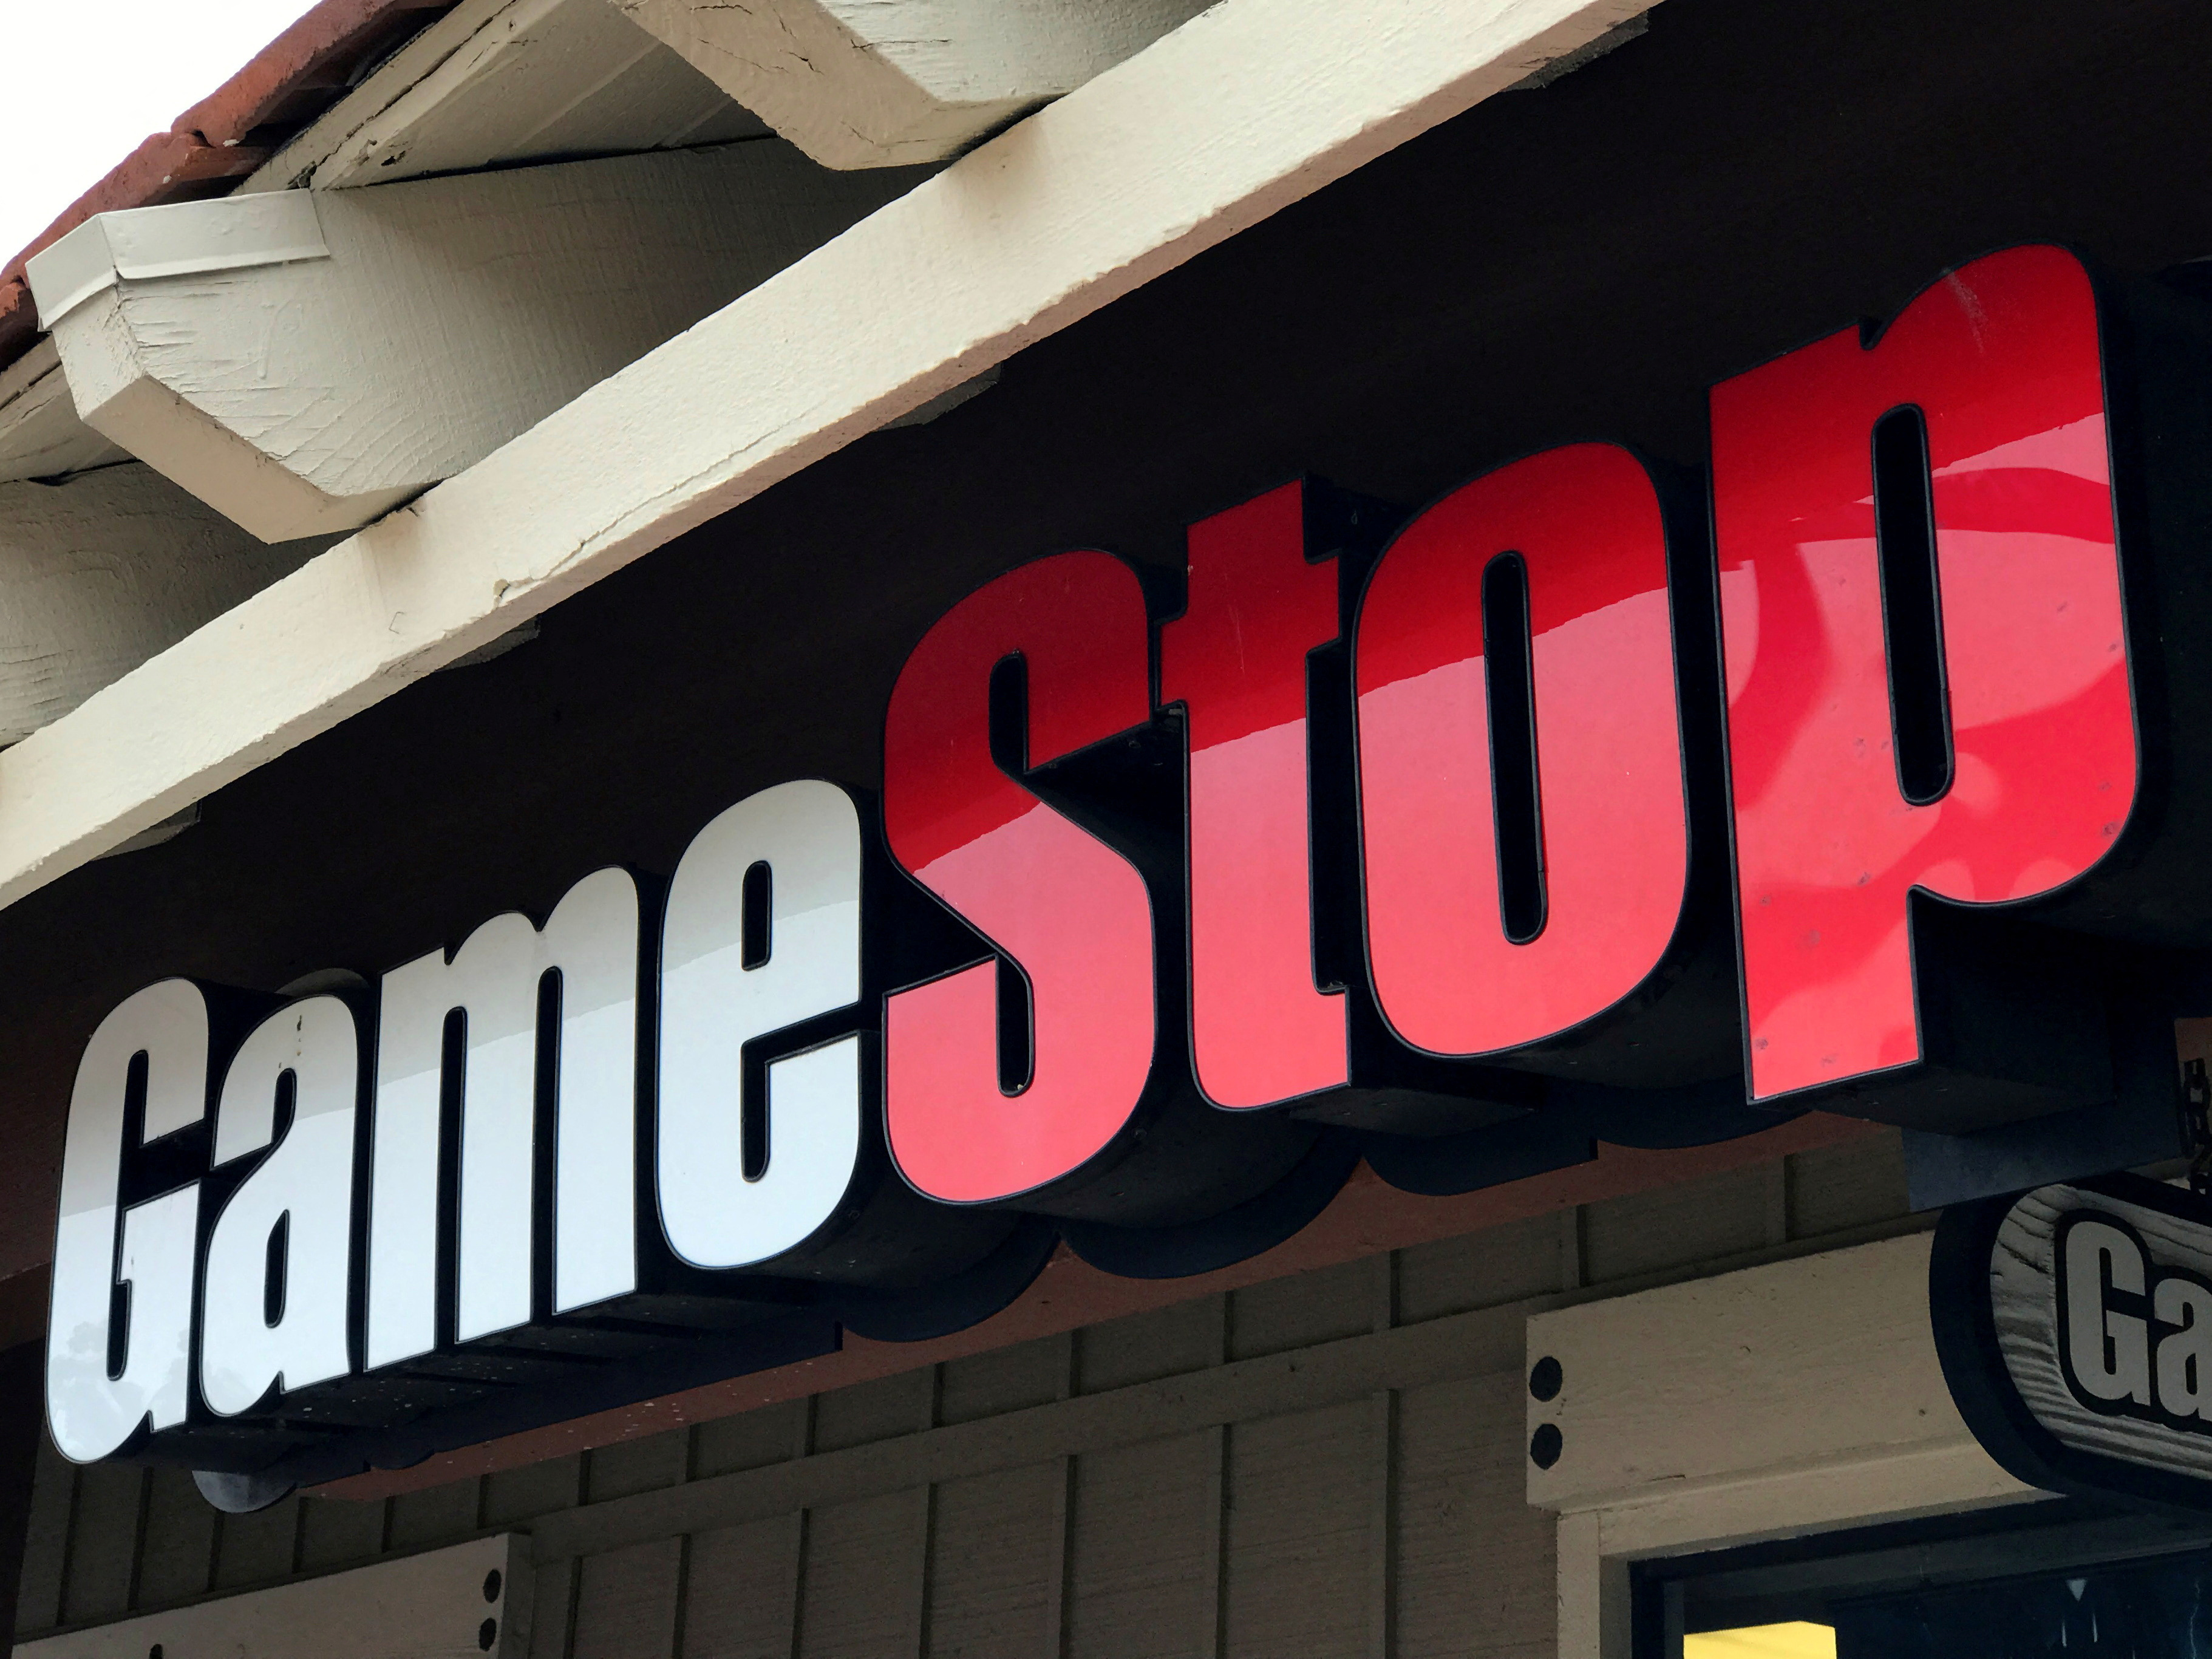 A GameStop Inc. store is shown in Encinitas, California